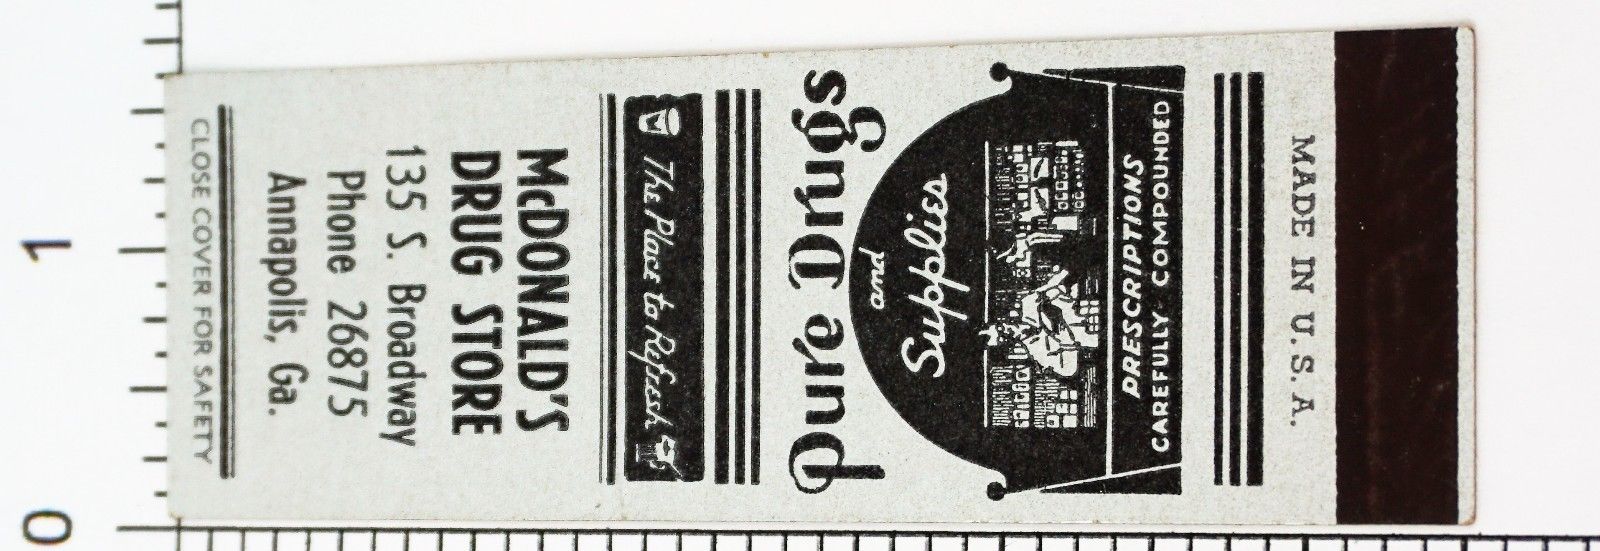 VTG 30'S 40'S DRUG STORE PHARMACY ADVERTISING MATCHBOOK MATCHES SAMPLE